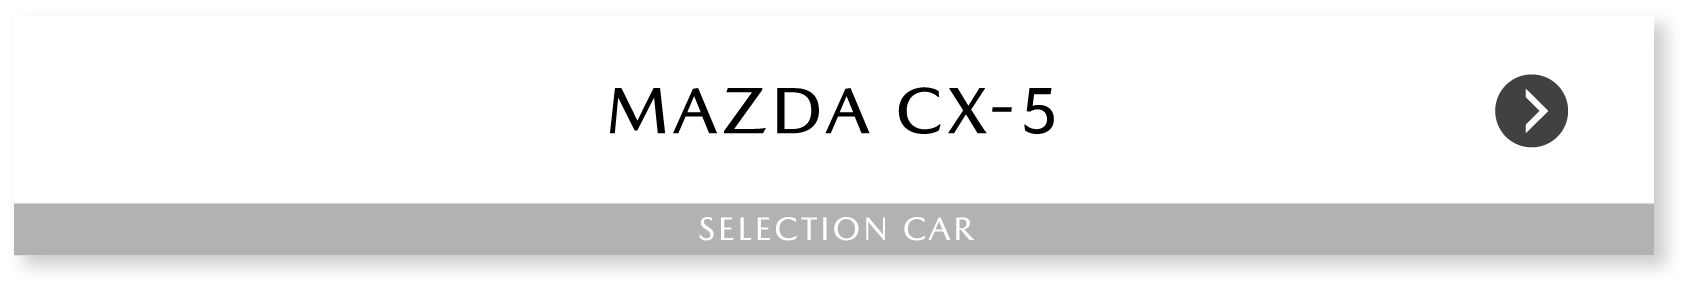 MAZDA CX-5